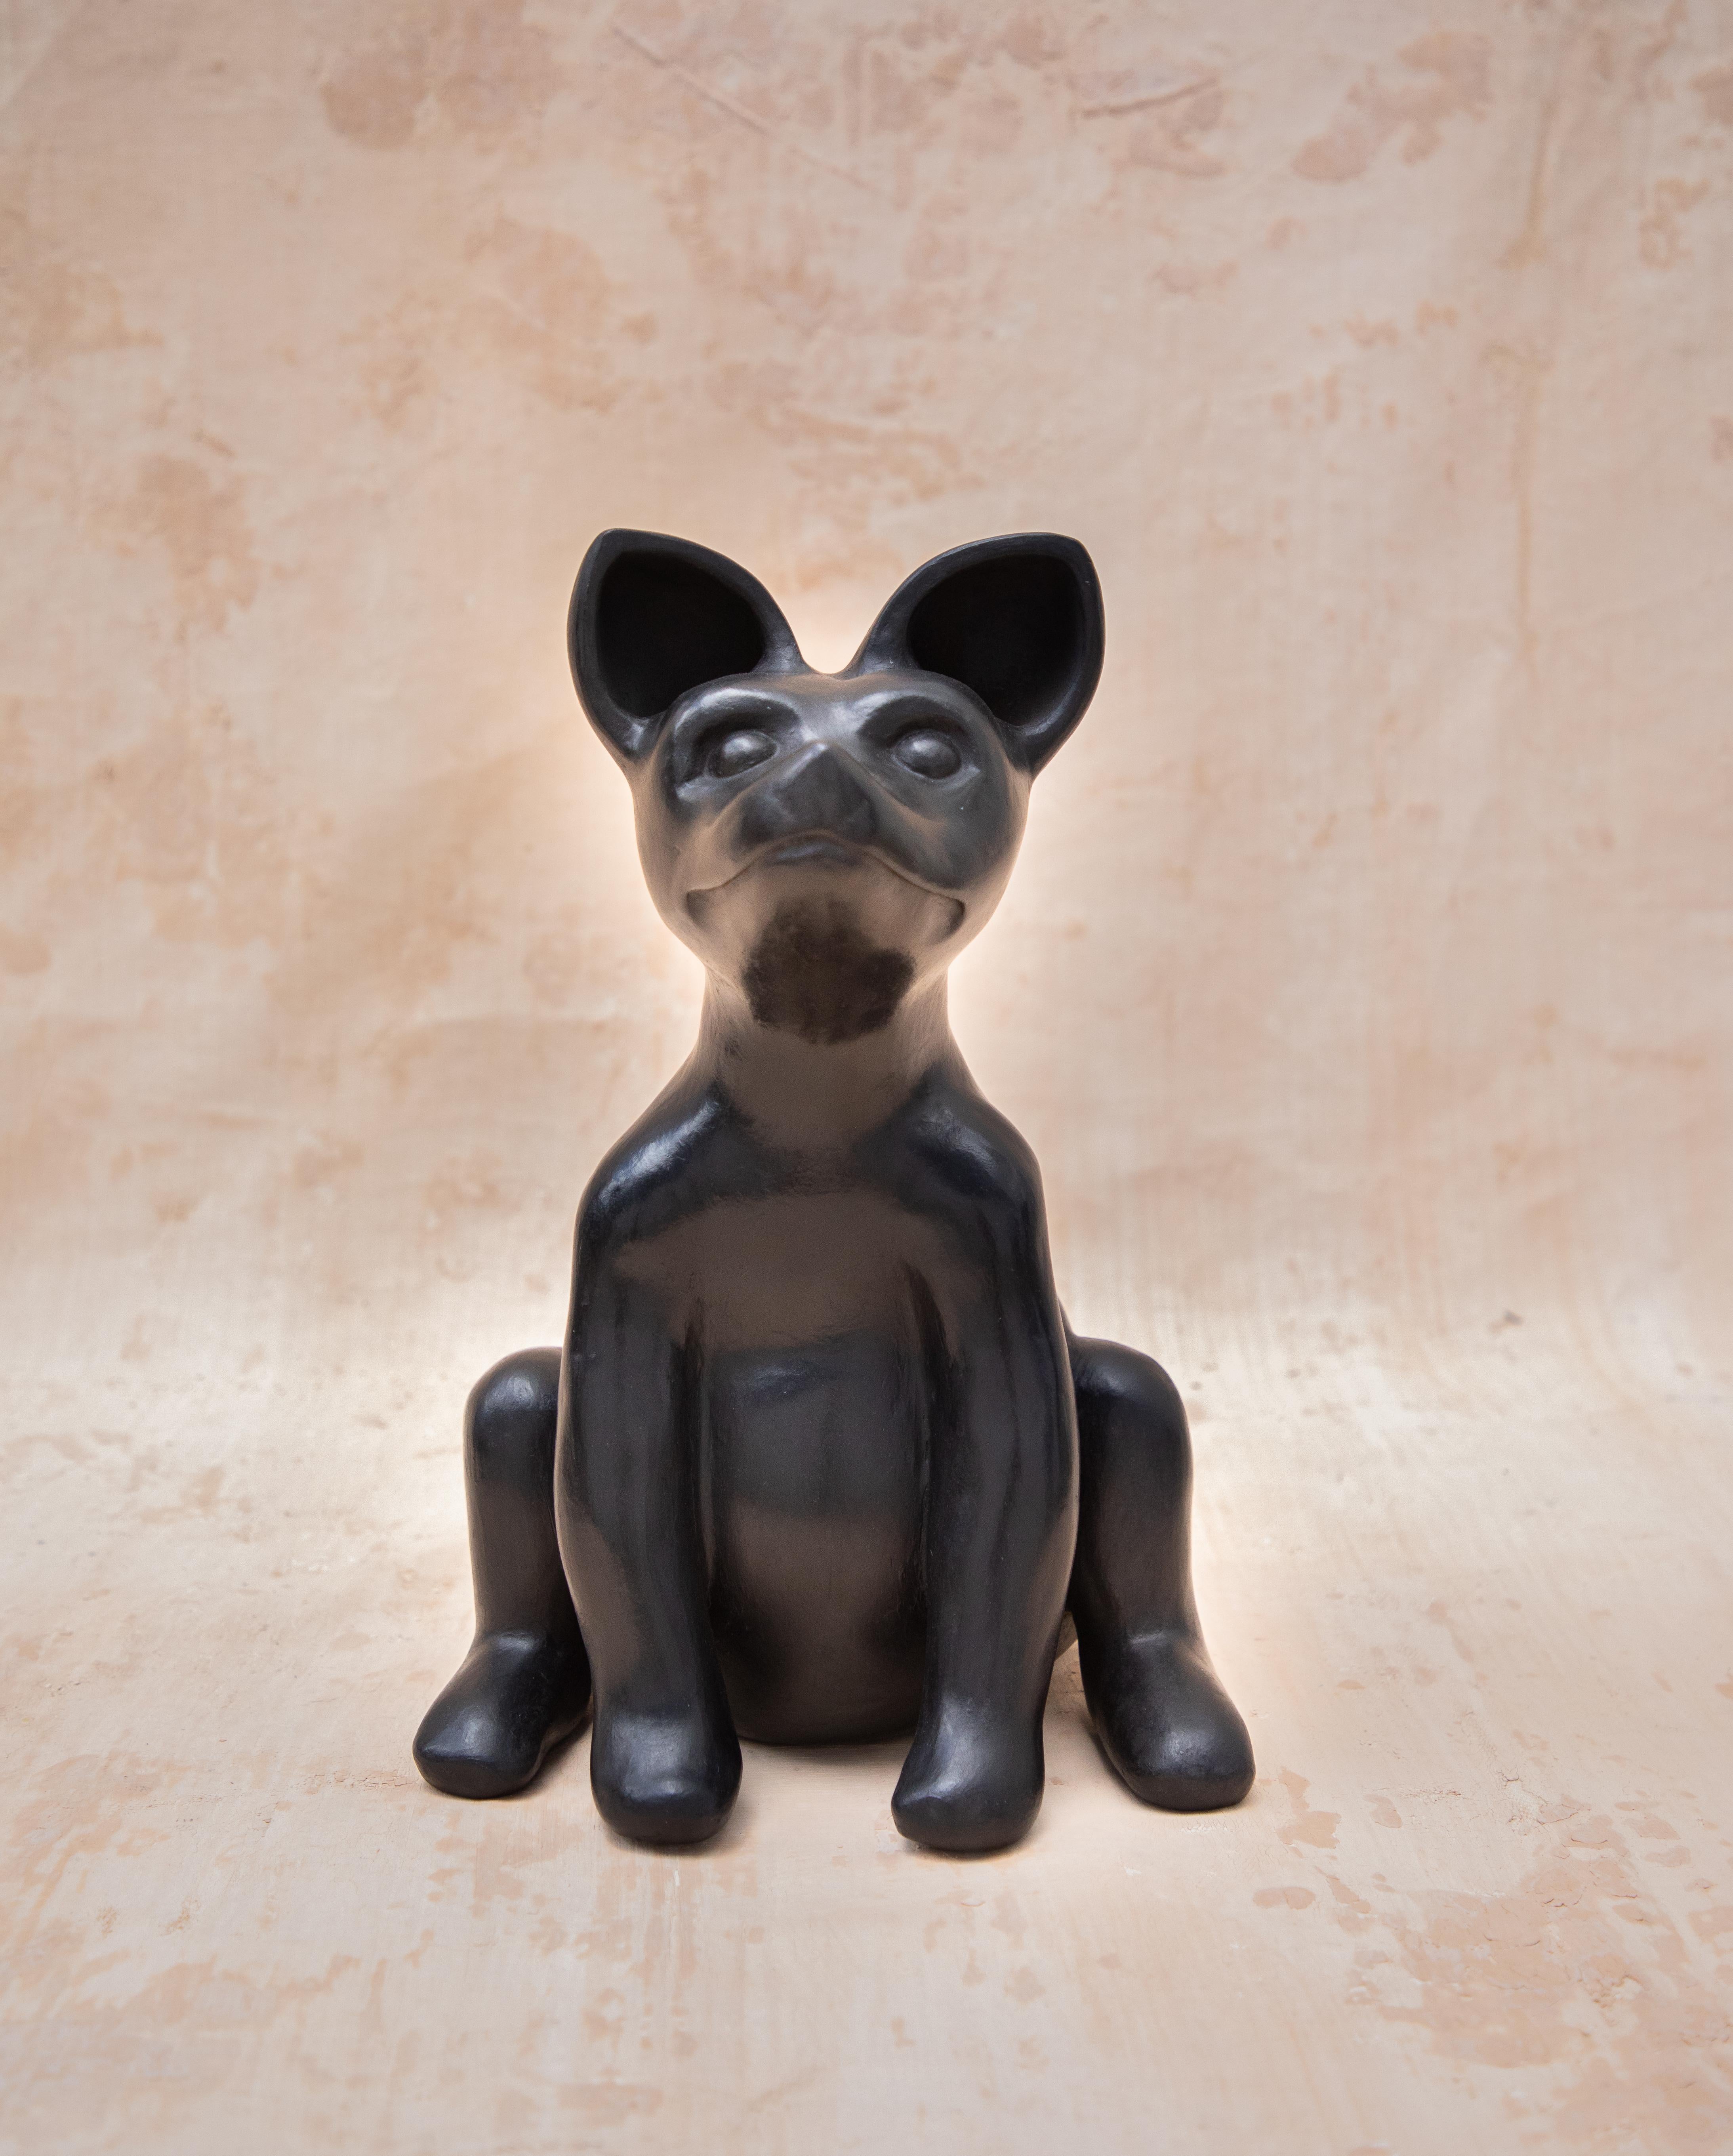 Sitzender Xolo von Onora
Abmessungen: B 30 x H 25 cm.
MATERIALIEN: Ton, glasierte Töpferware.

Xolo, kurz für Xoloitzcuintle, ist eine Hunderasse, die in Mexiko seit langem ein kulturell bedeutsames Symbol ist. Diese Hunde galten bei den Azteken